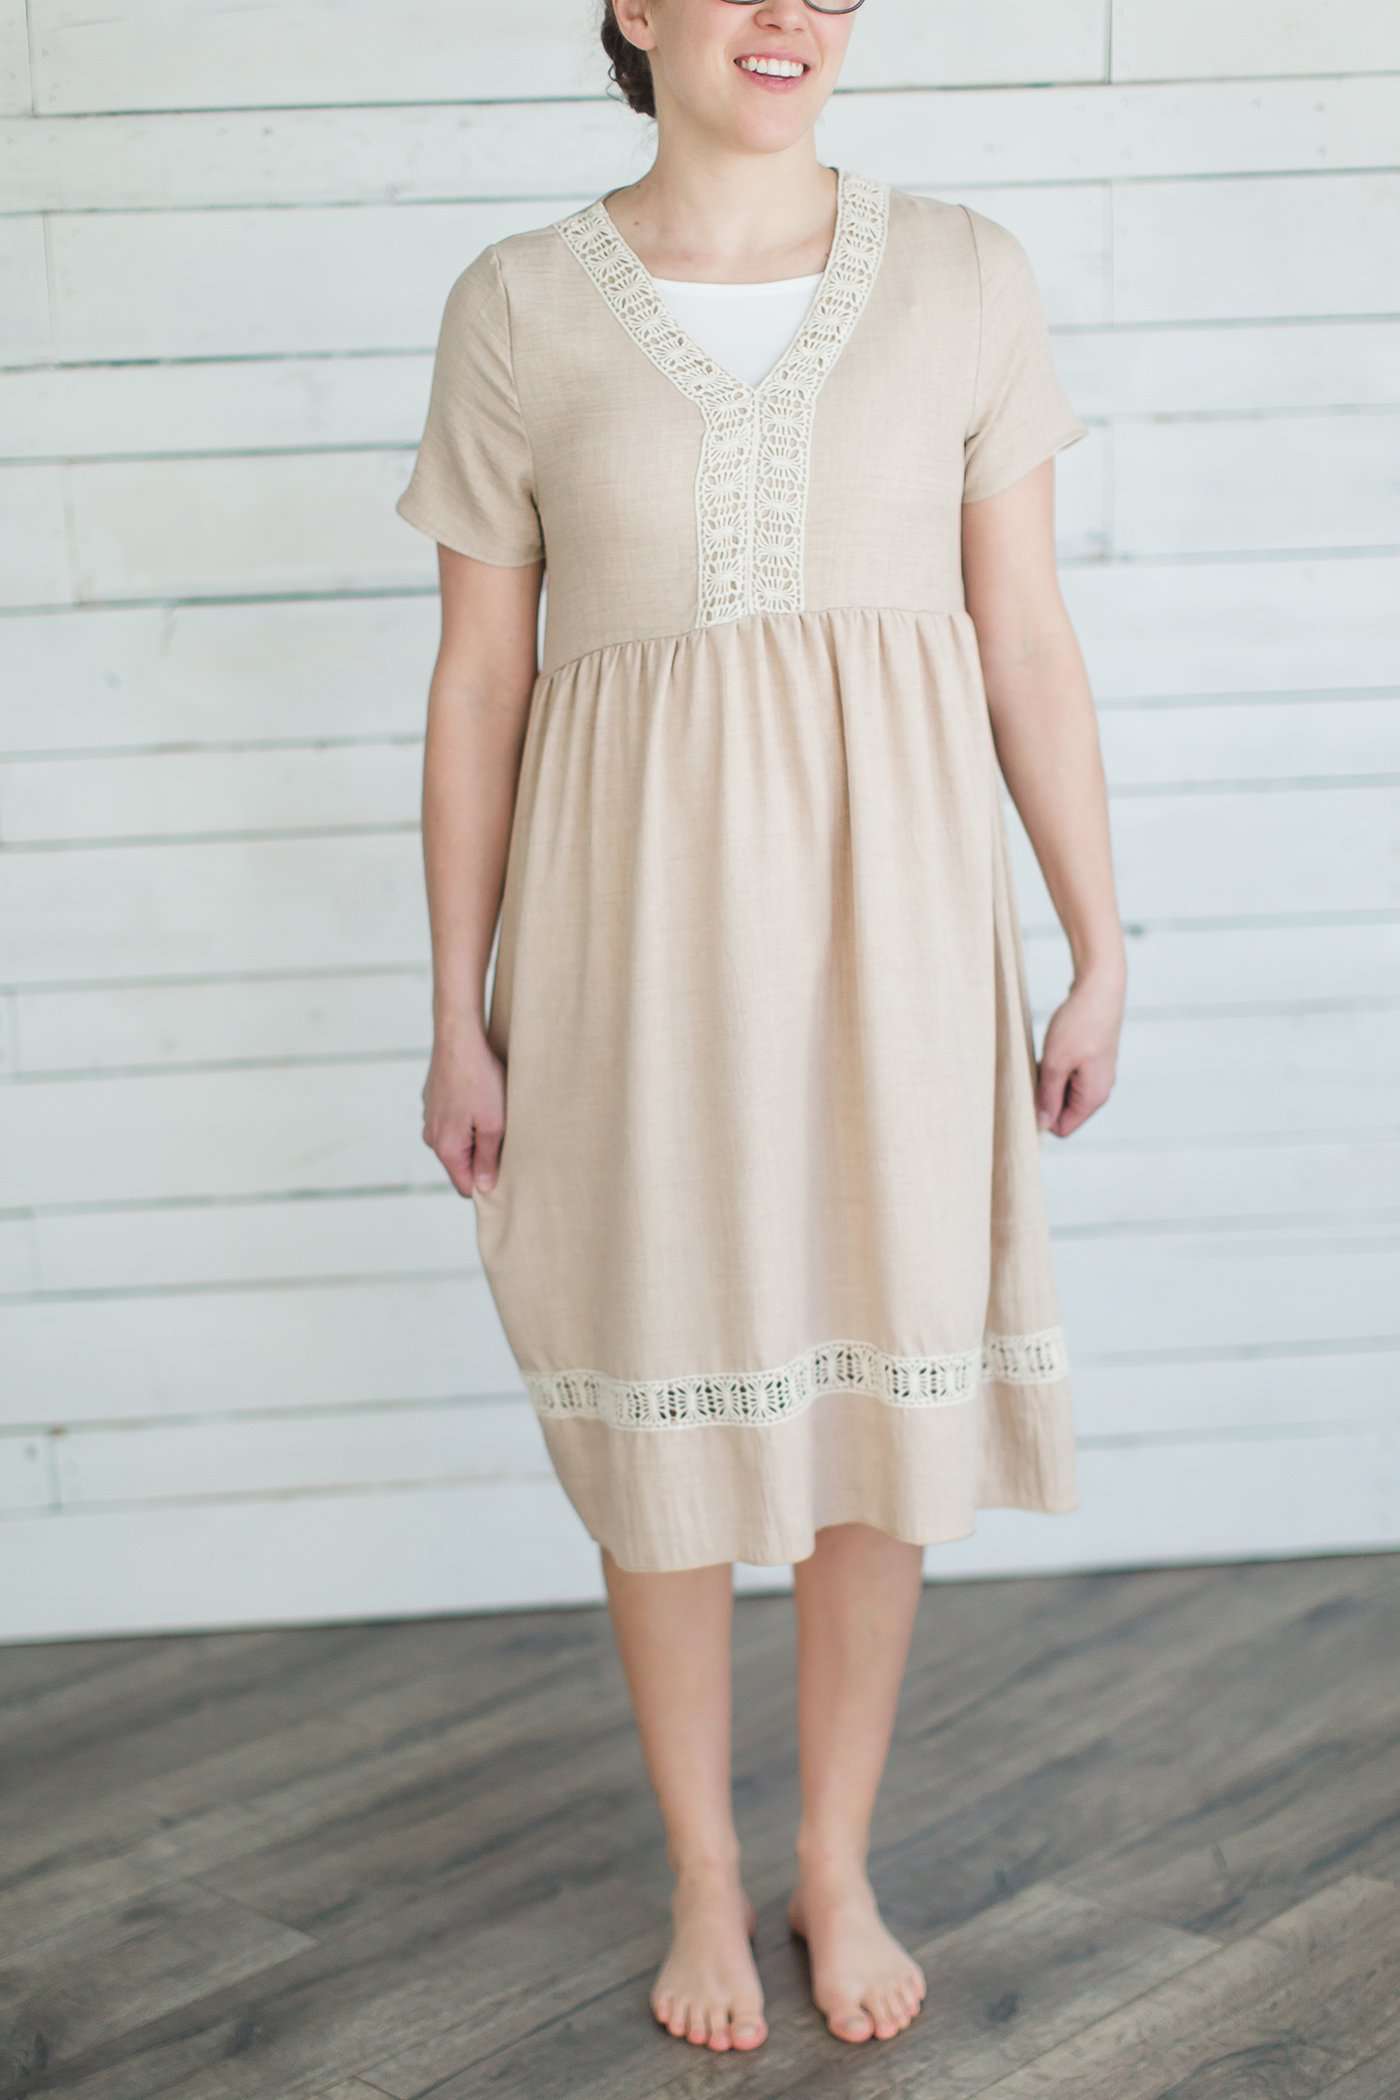 Lace Trim Tunic Dress - FINAL SALE Dresses